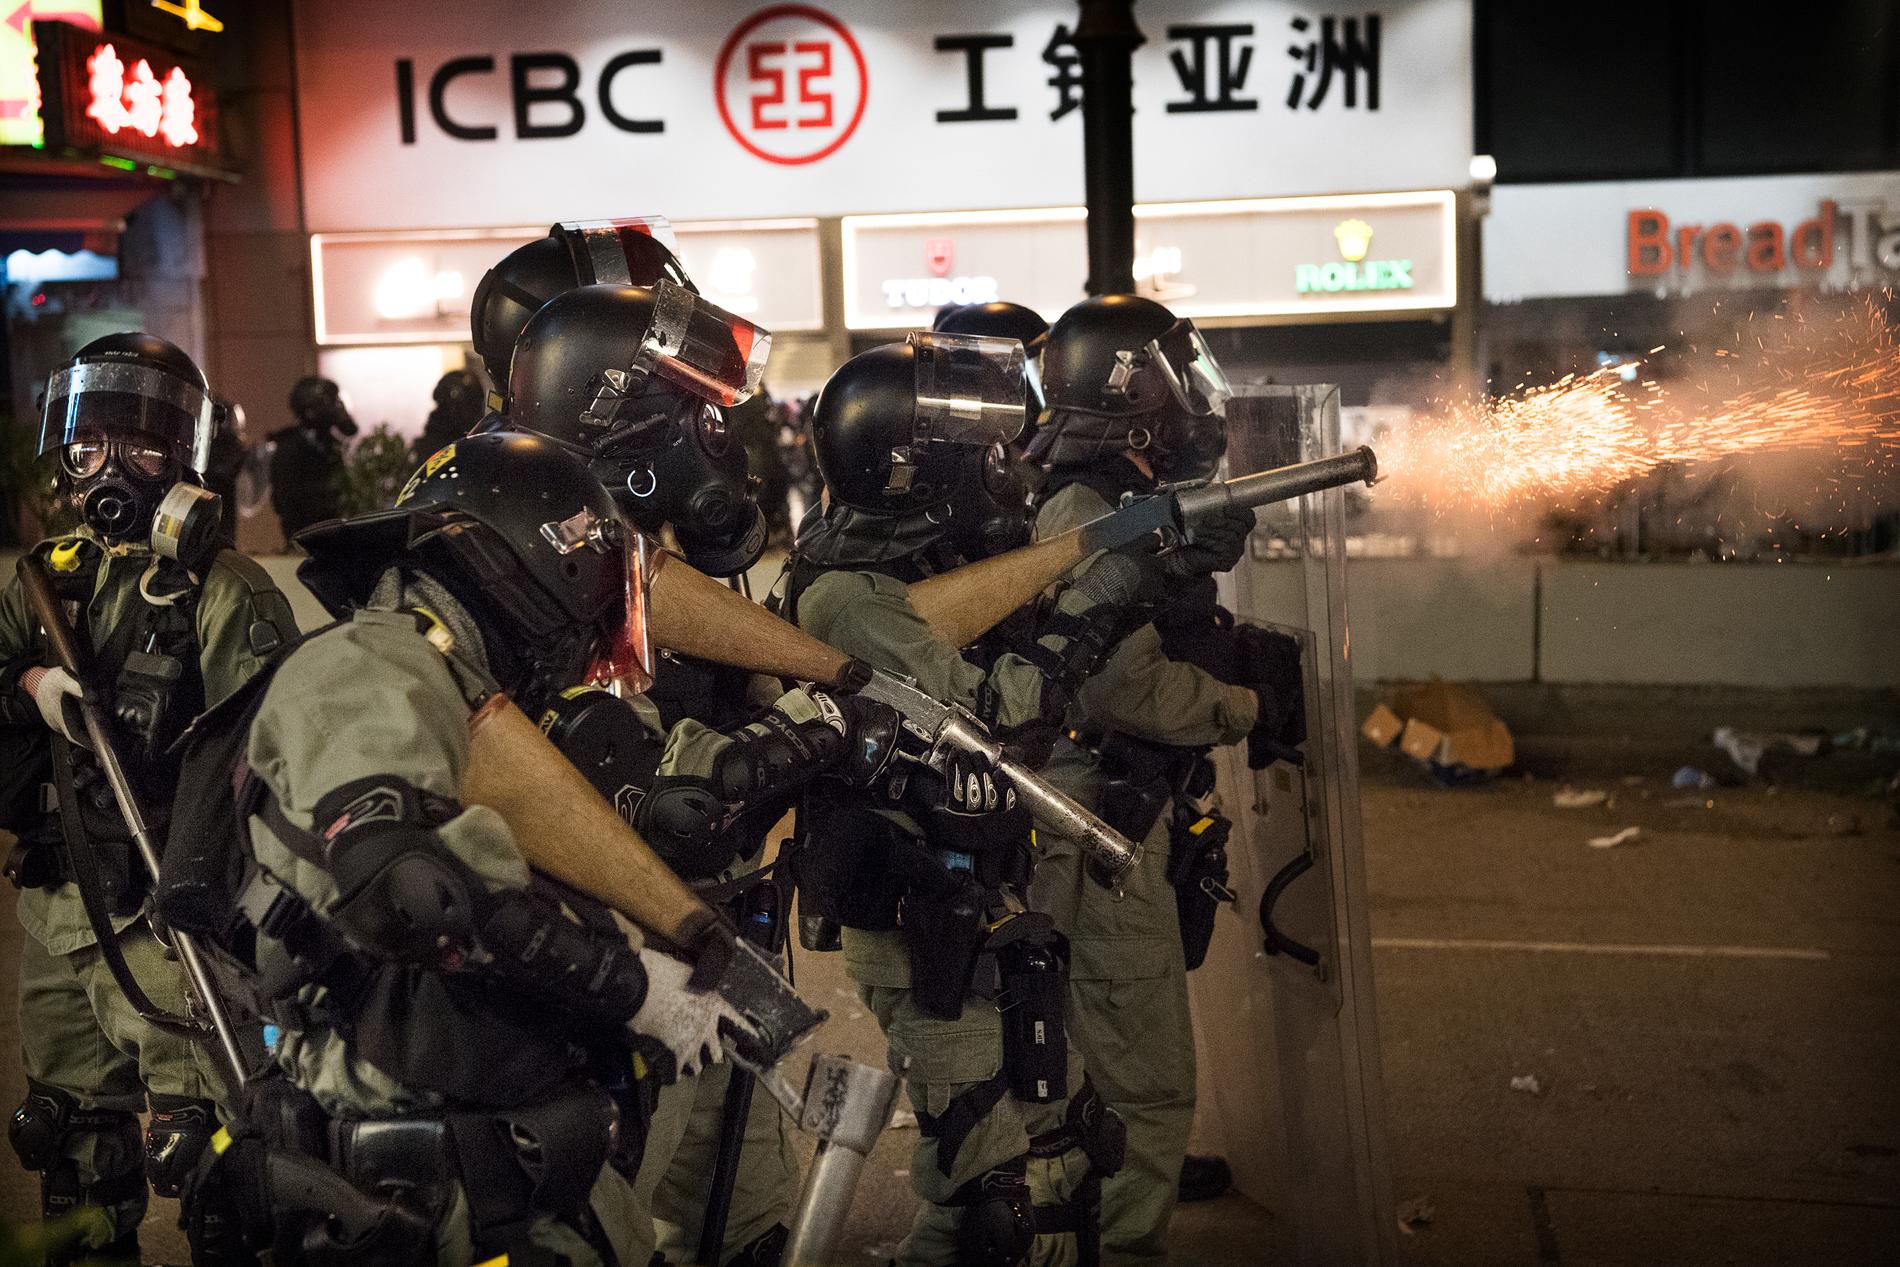 Demonstrationerna i Hongkong som pågått sedan i juni har nu urartat till fullskaliga strider mellan studenter och polis. Medan poliserna skjuter tårgas mot demonstranterna beväpnar sig ungdomarna med gatstenar och brandbomber. 